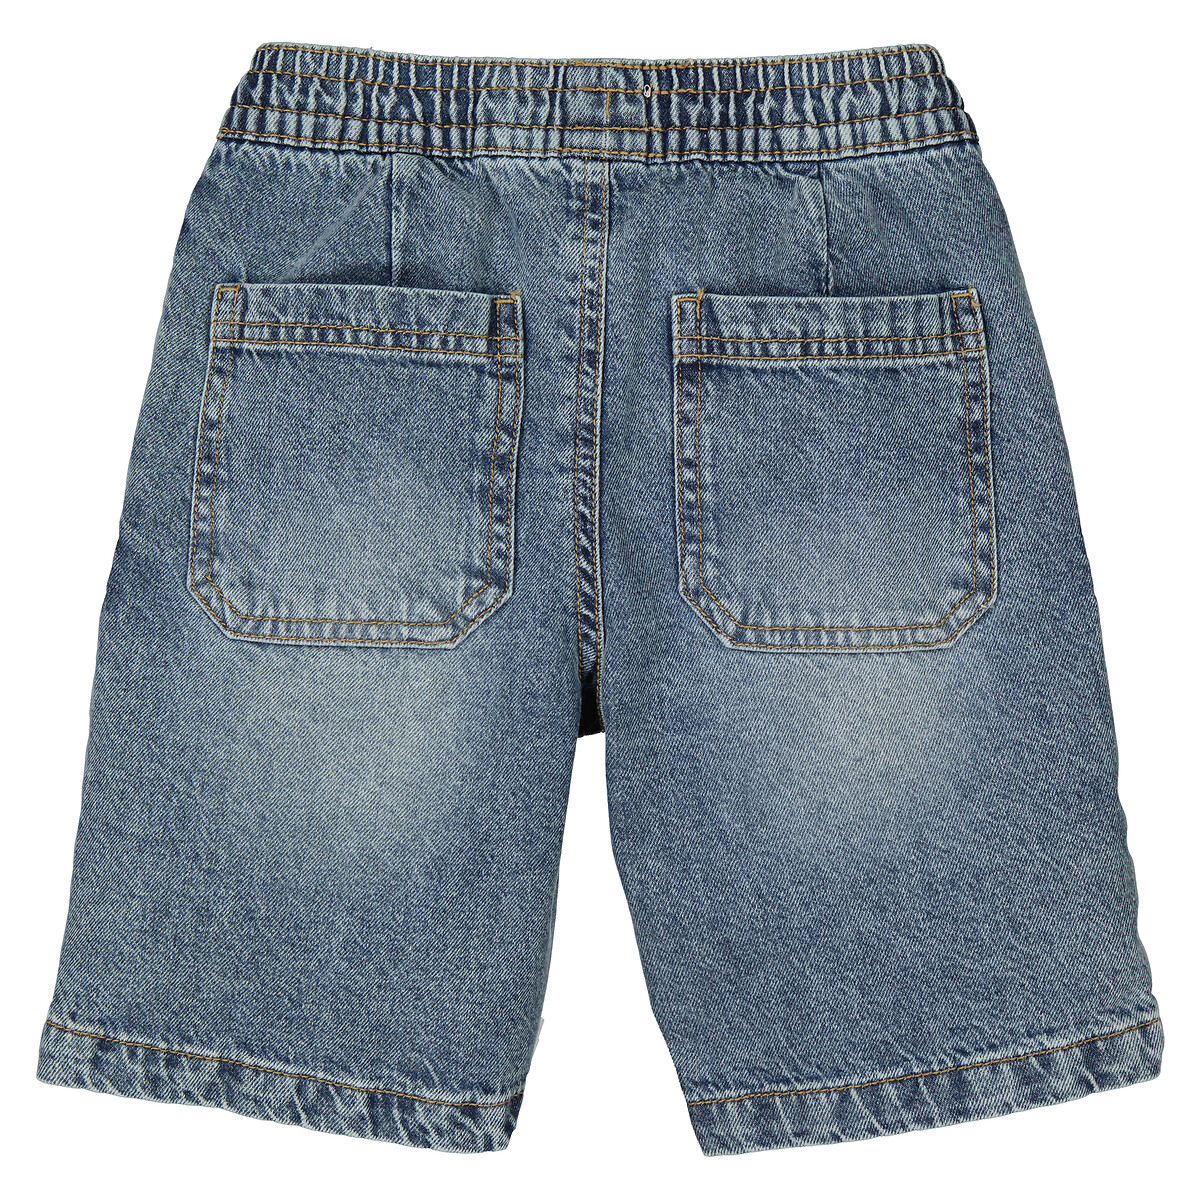 Бермуды Из джинсовой ткани с поясом на резинке 12 синий LaRedoute, размер 12 - фото 4